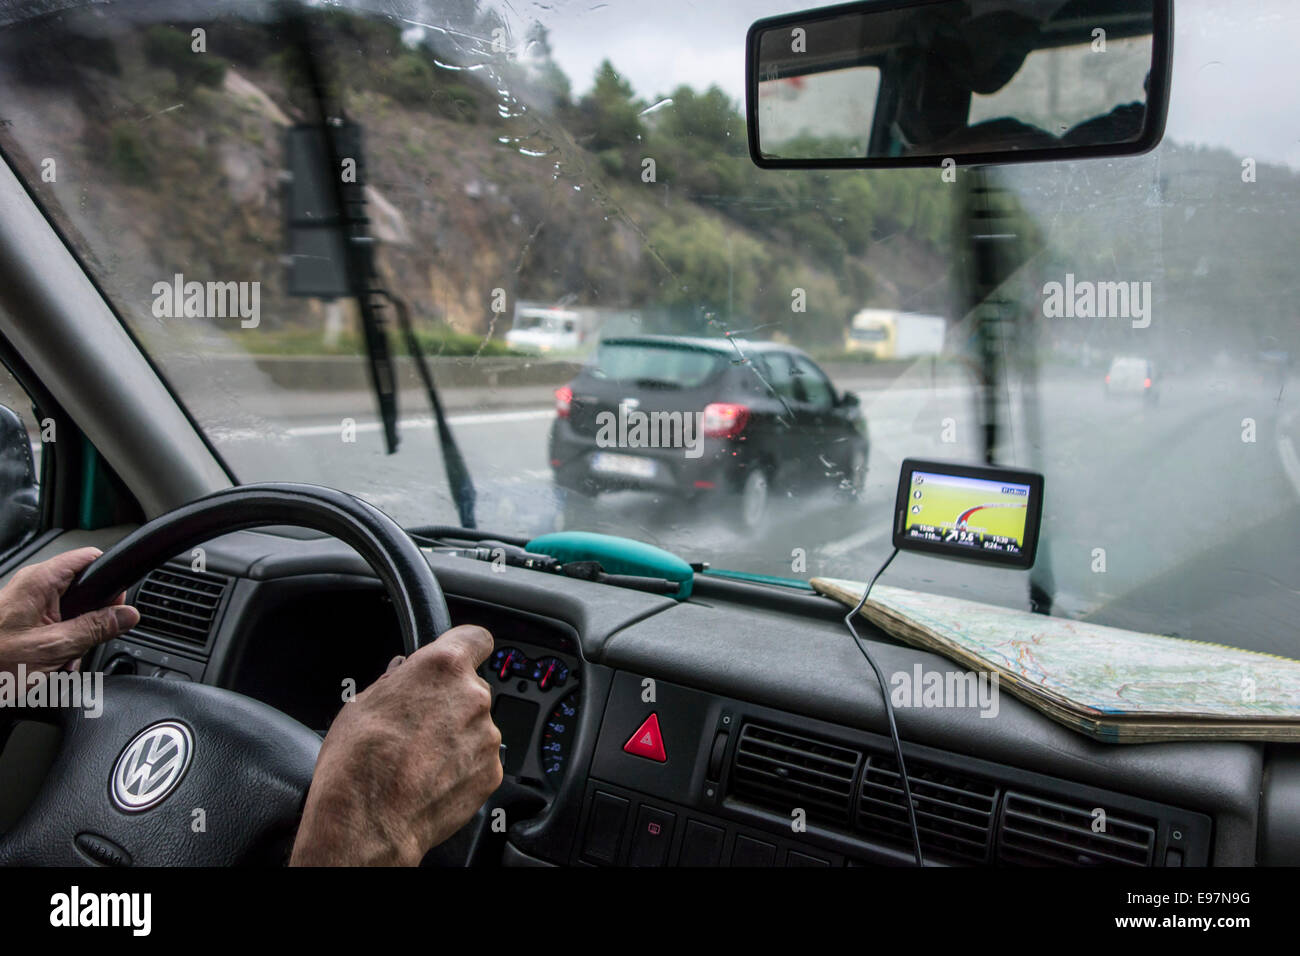 Rasende Autos überholen Fahrzeug auf der Autobahn während starkem Regendusche im Inneren Autos mit GPS und Fahrplan auf Armaturenbrett aus gesehen Stockfoto